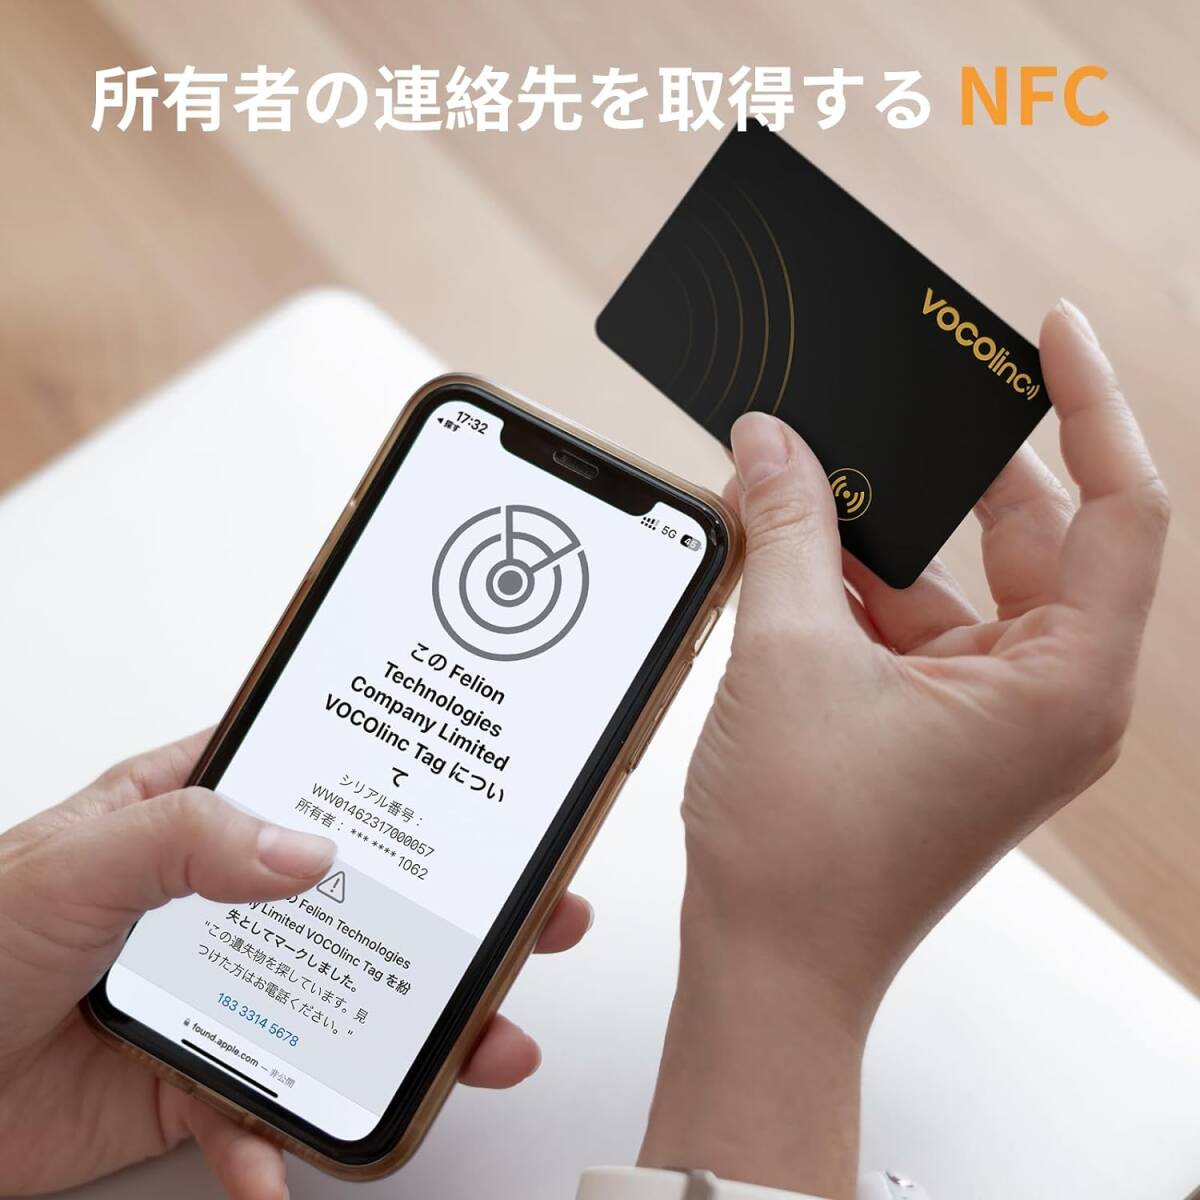 VOCOlinc 紛失防止タグ カード 超薄 (1.6mm) 紛失防止トラッカー 忘れ物防止 タグ スマートタグ Bluetooth トラッカー NFC Apple iphone _画像5